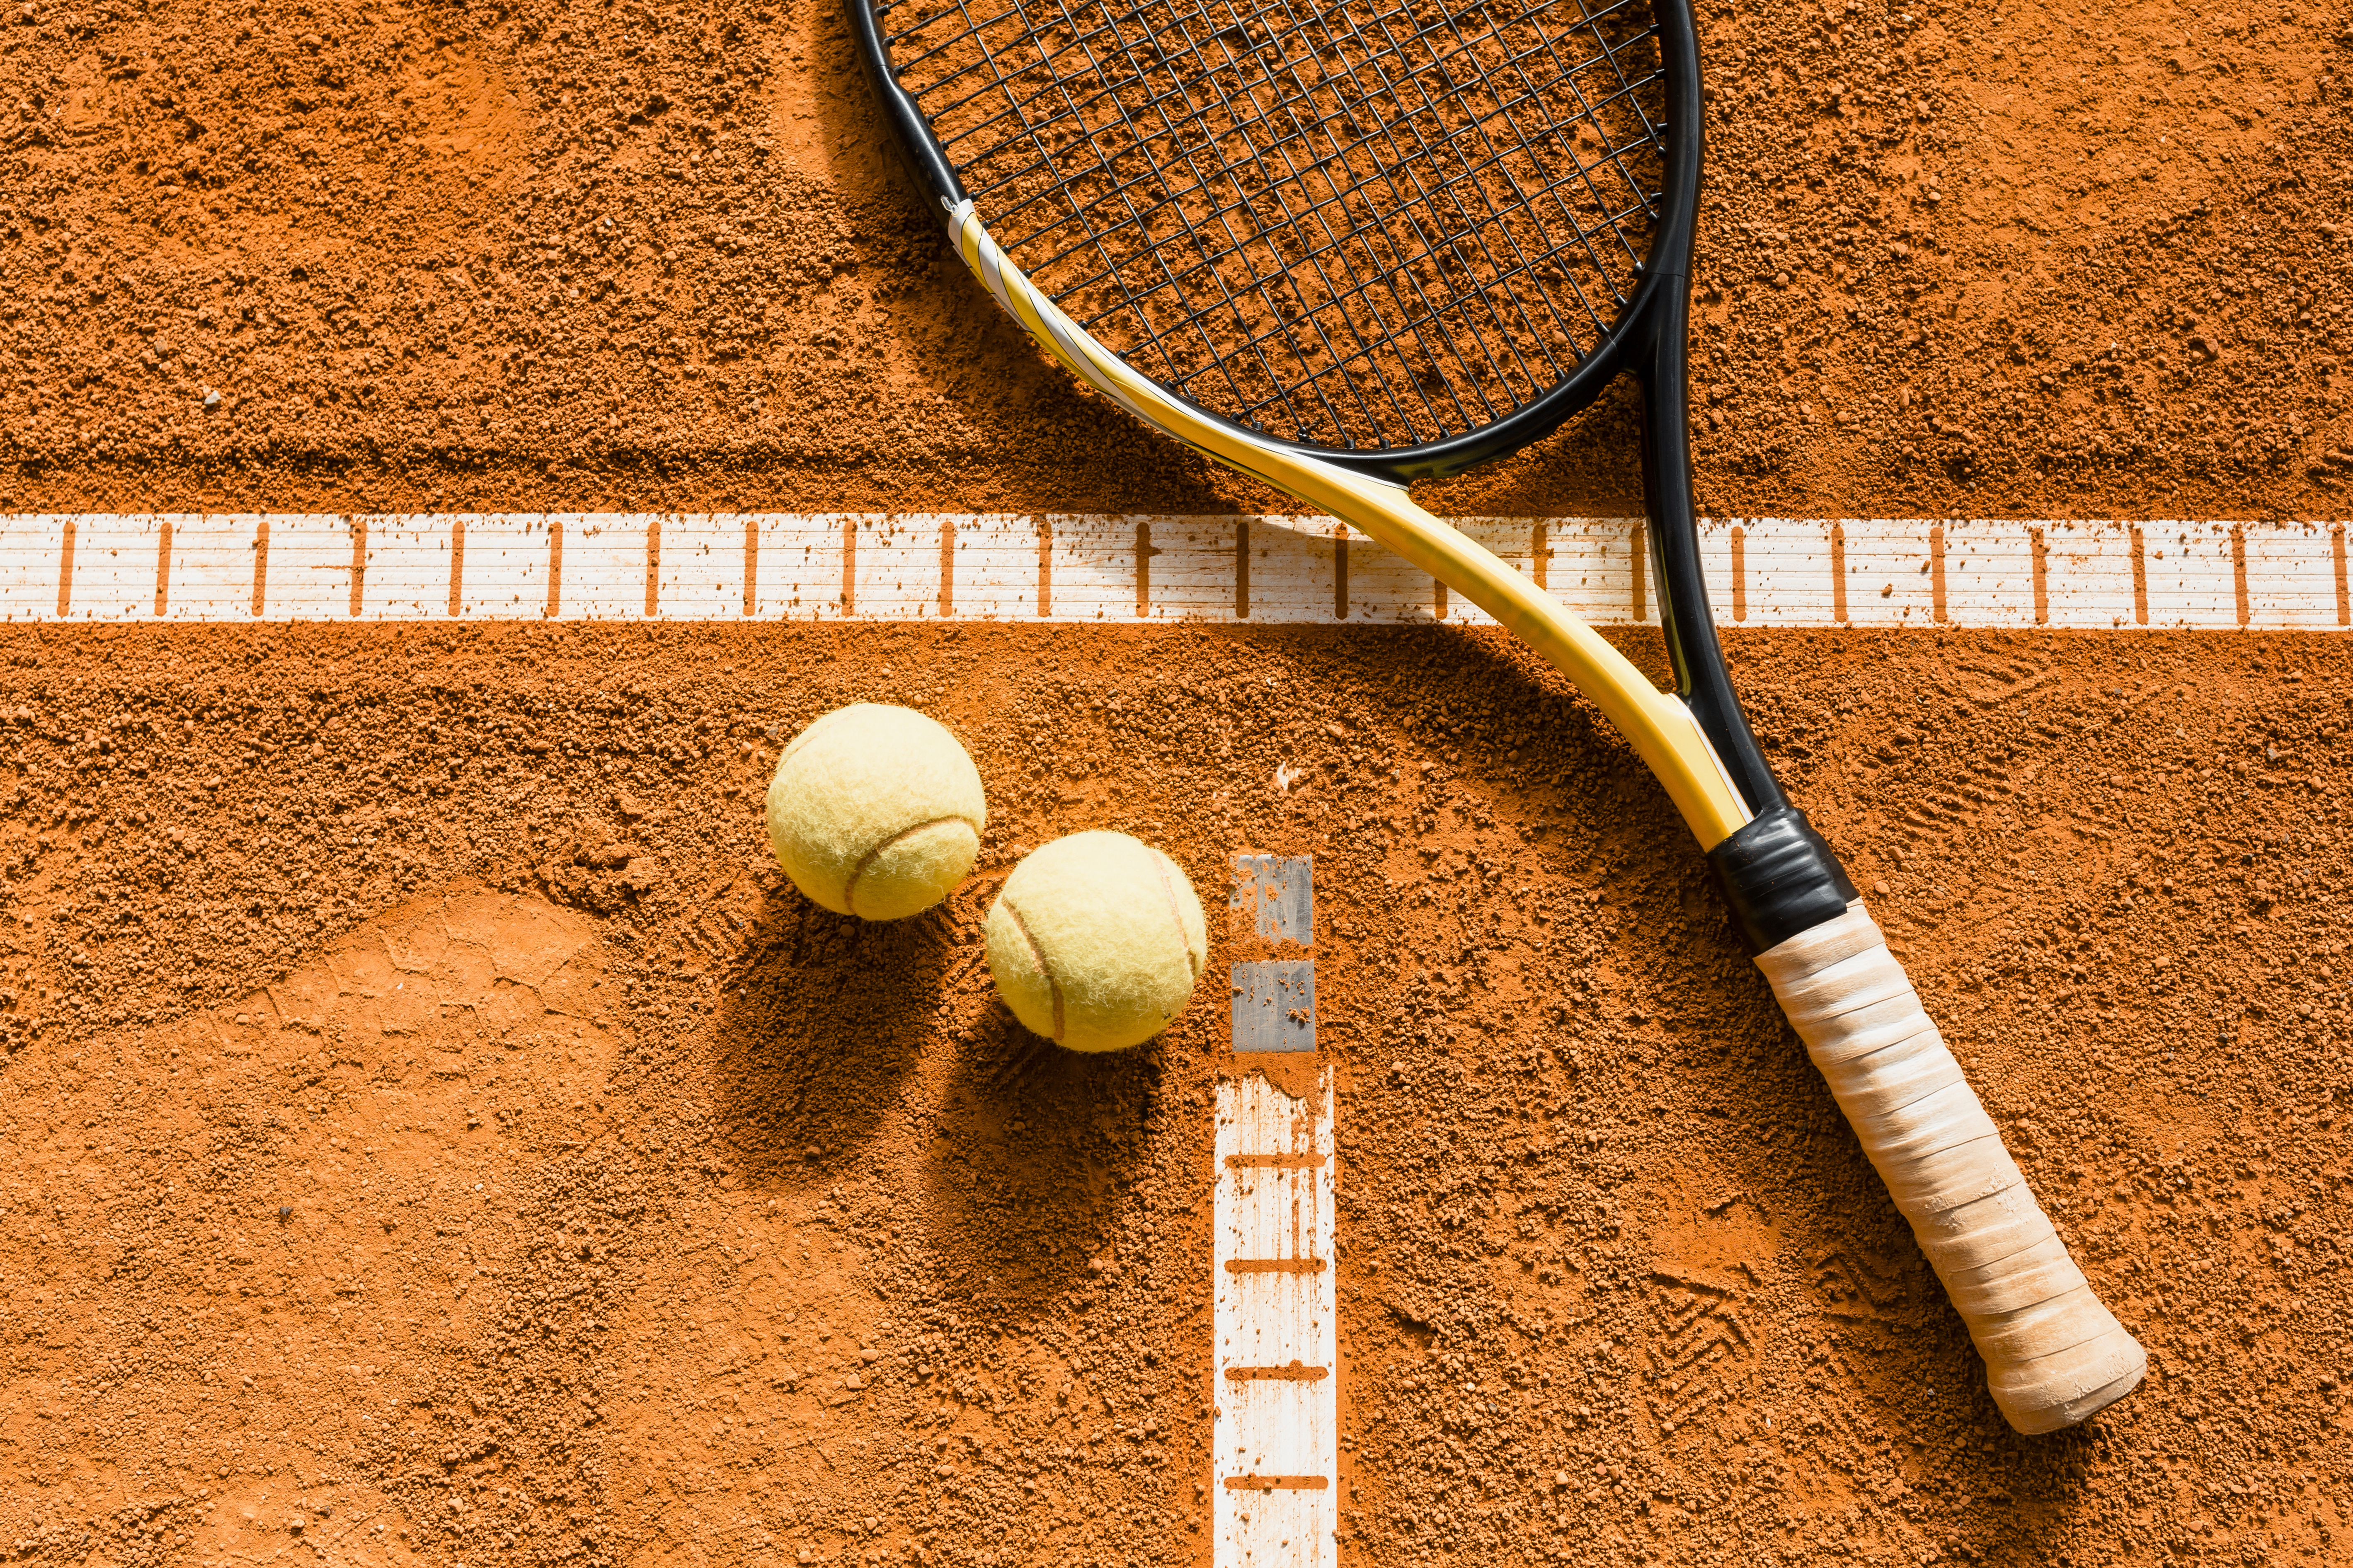  Formação de jovens tenistas ganha impulso nos clubes 